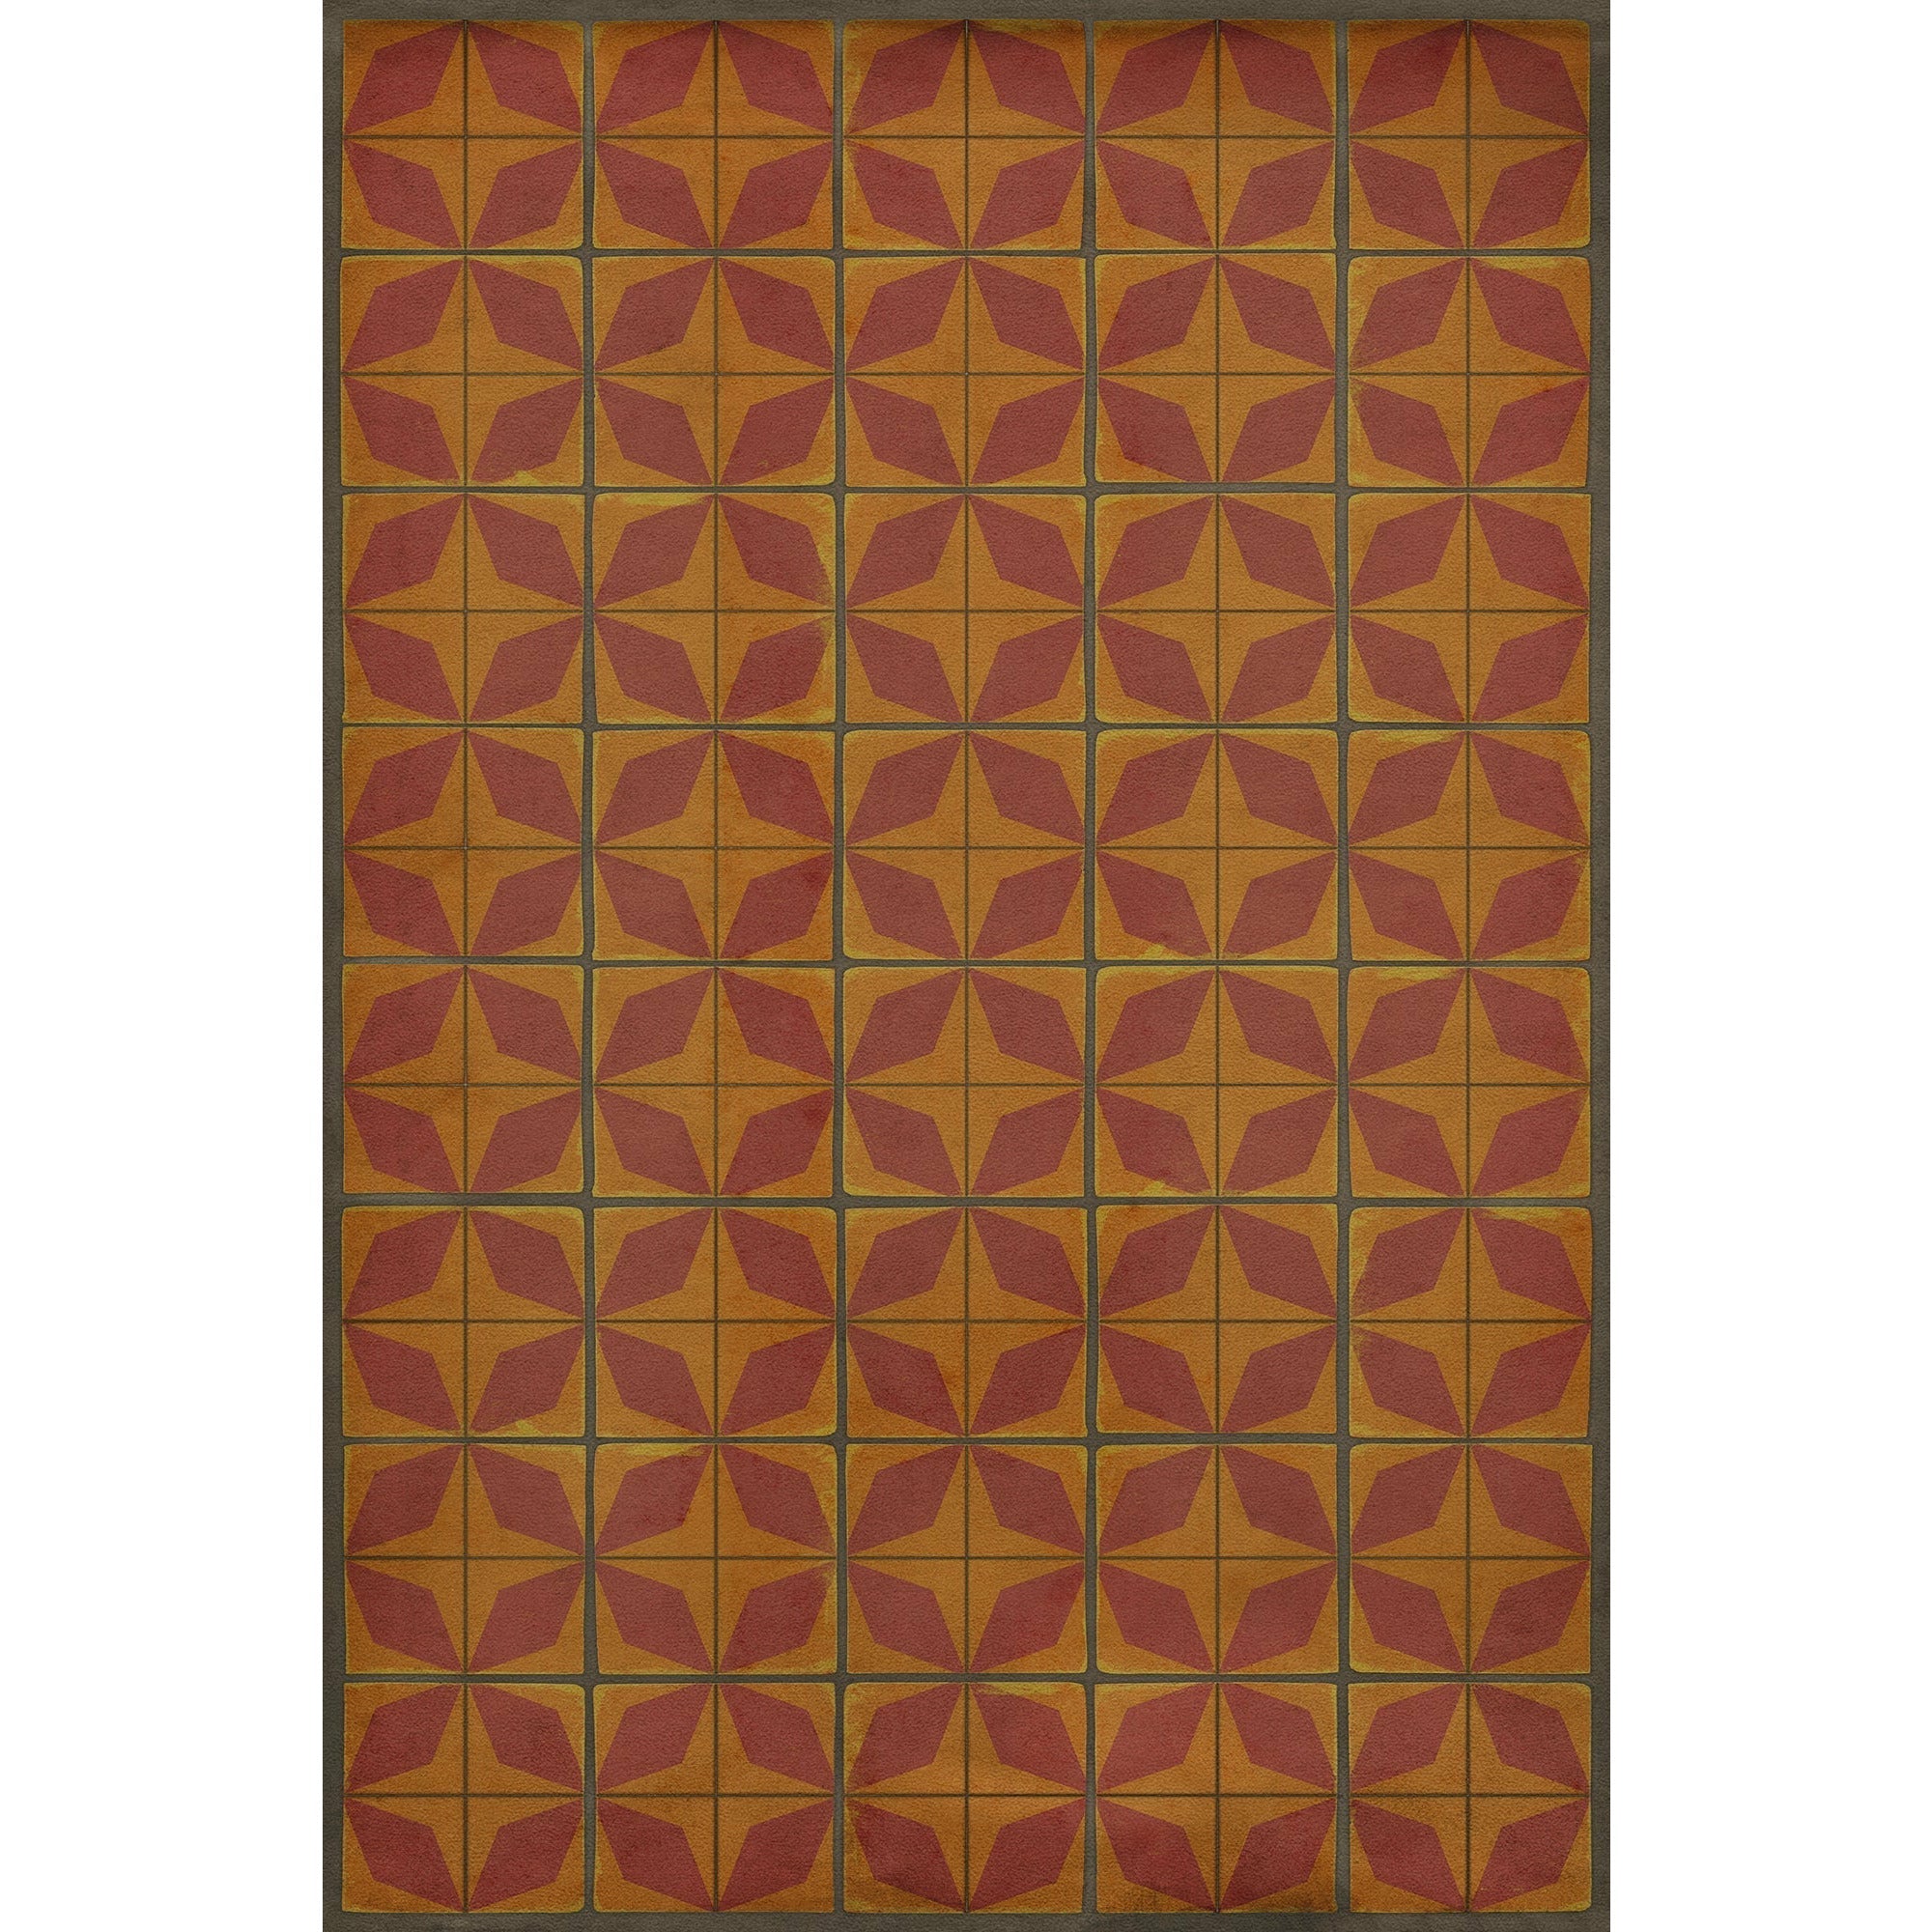 Pattern 54 Mars Rising Vinyl Floor Cloth